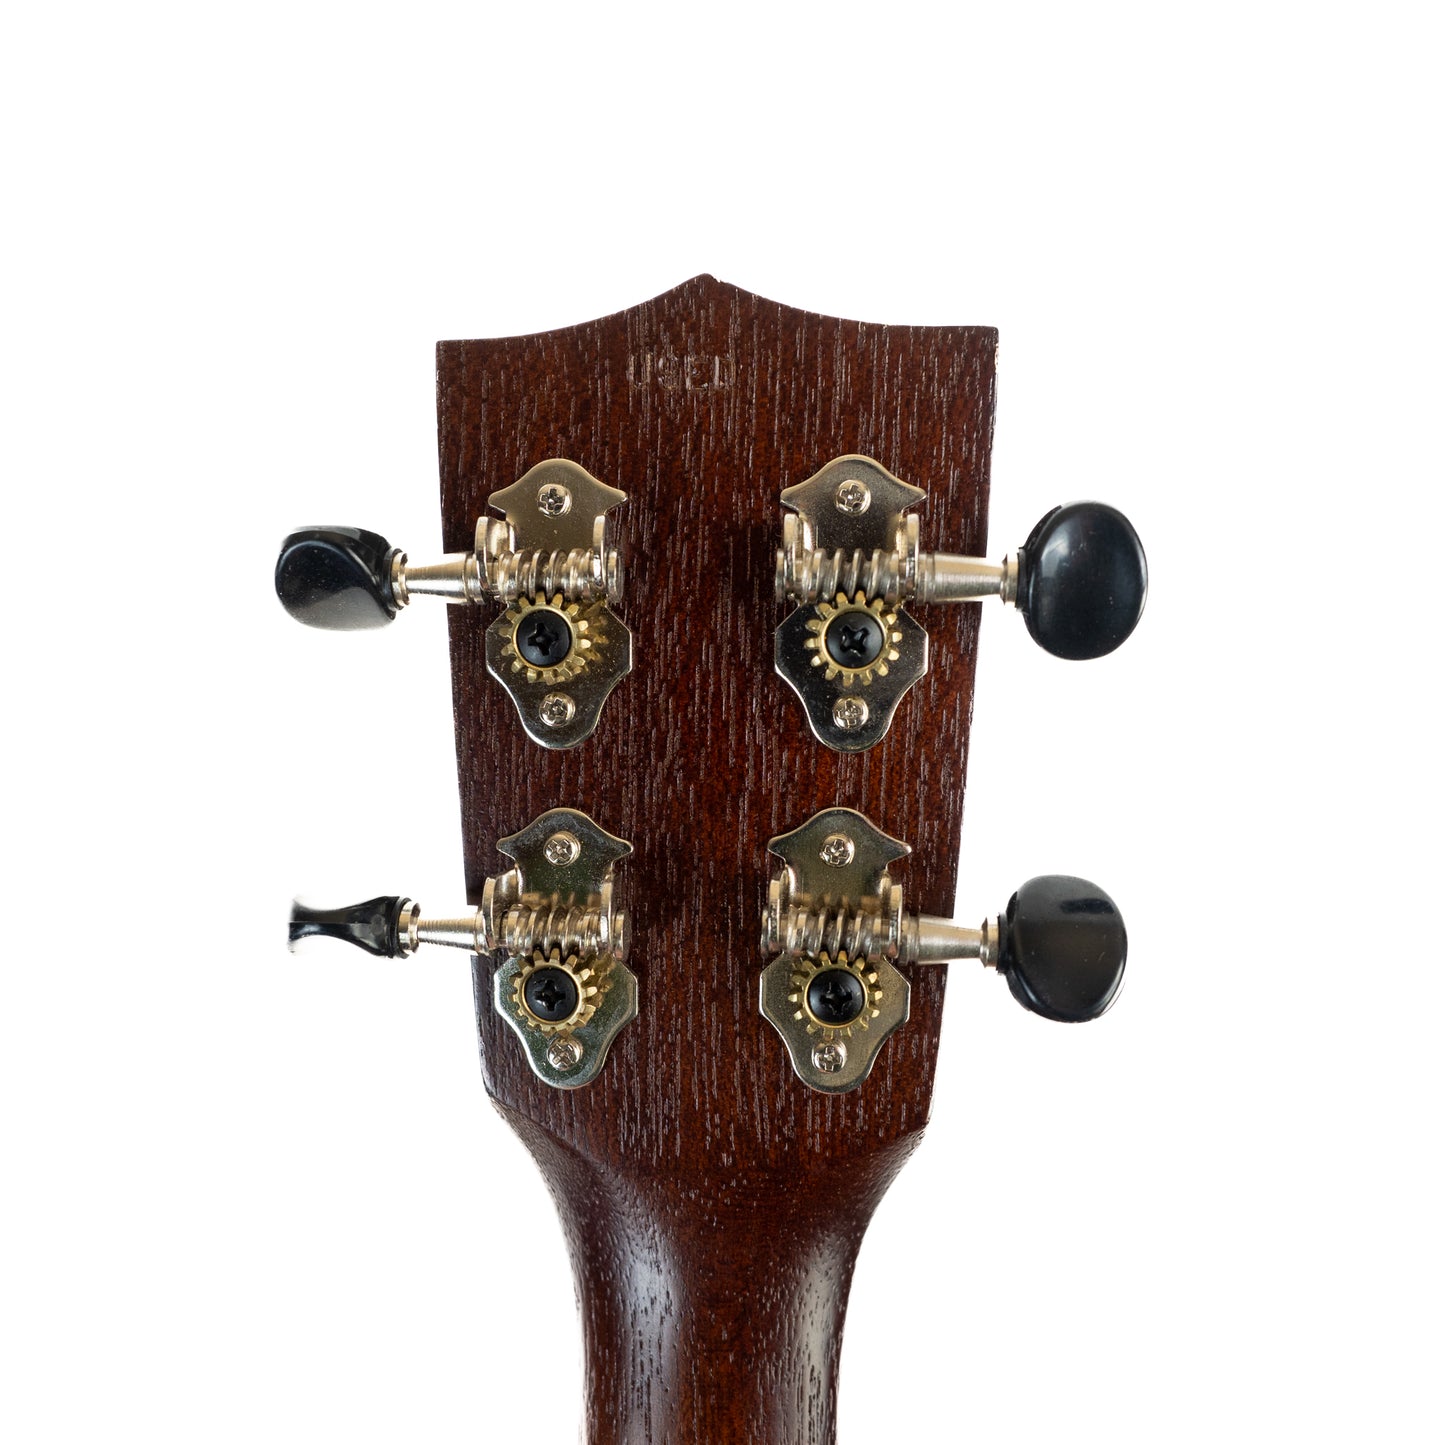 Kala satin mahogany long neck soprano ukulele, engraved rosette with Fender gigbag